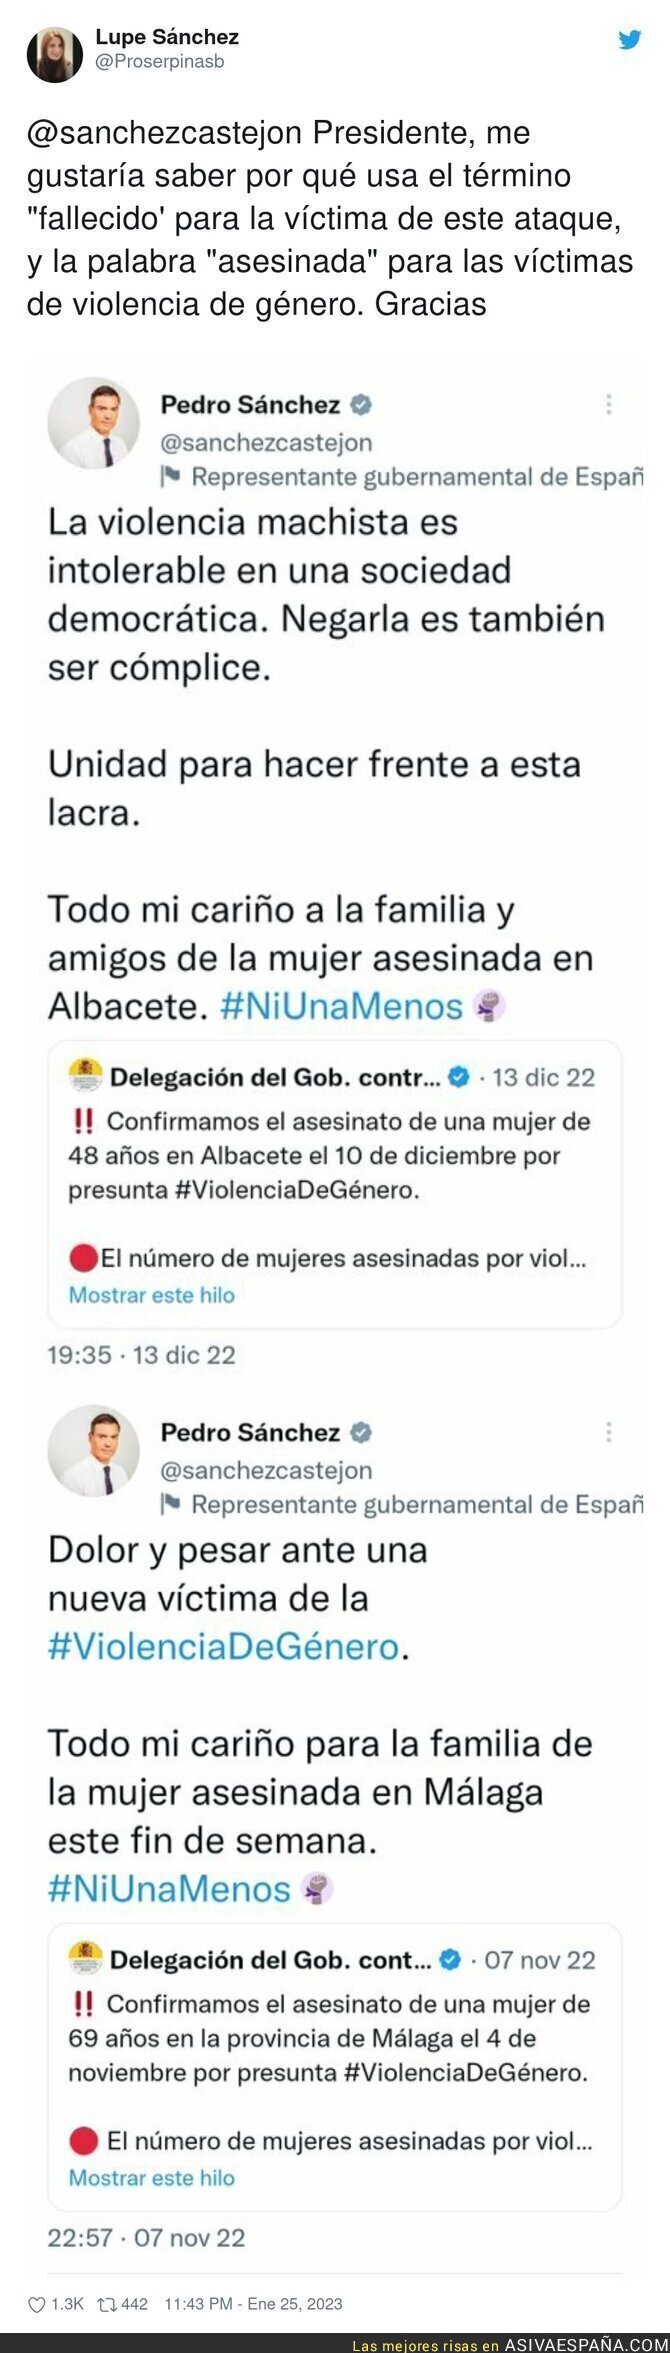 Diferencias que no se entienden en Pedro Sánchez